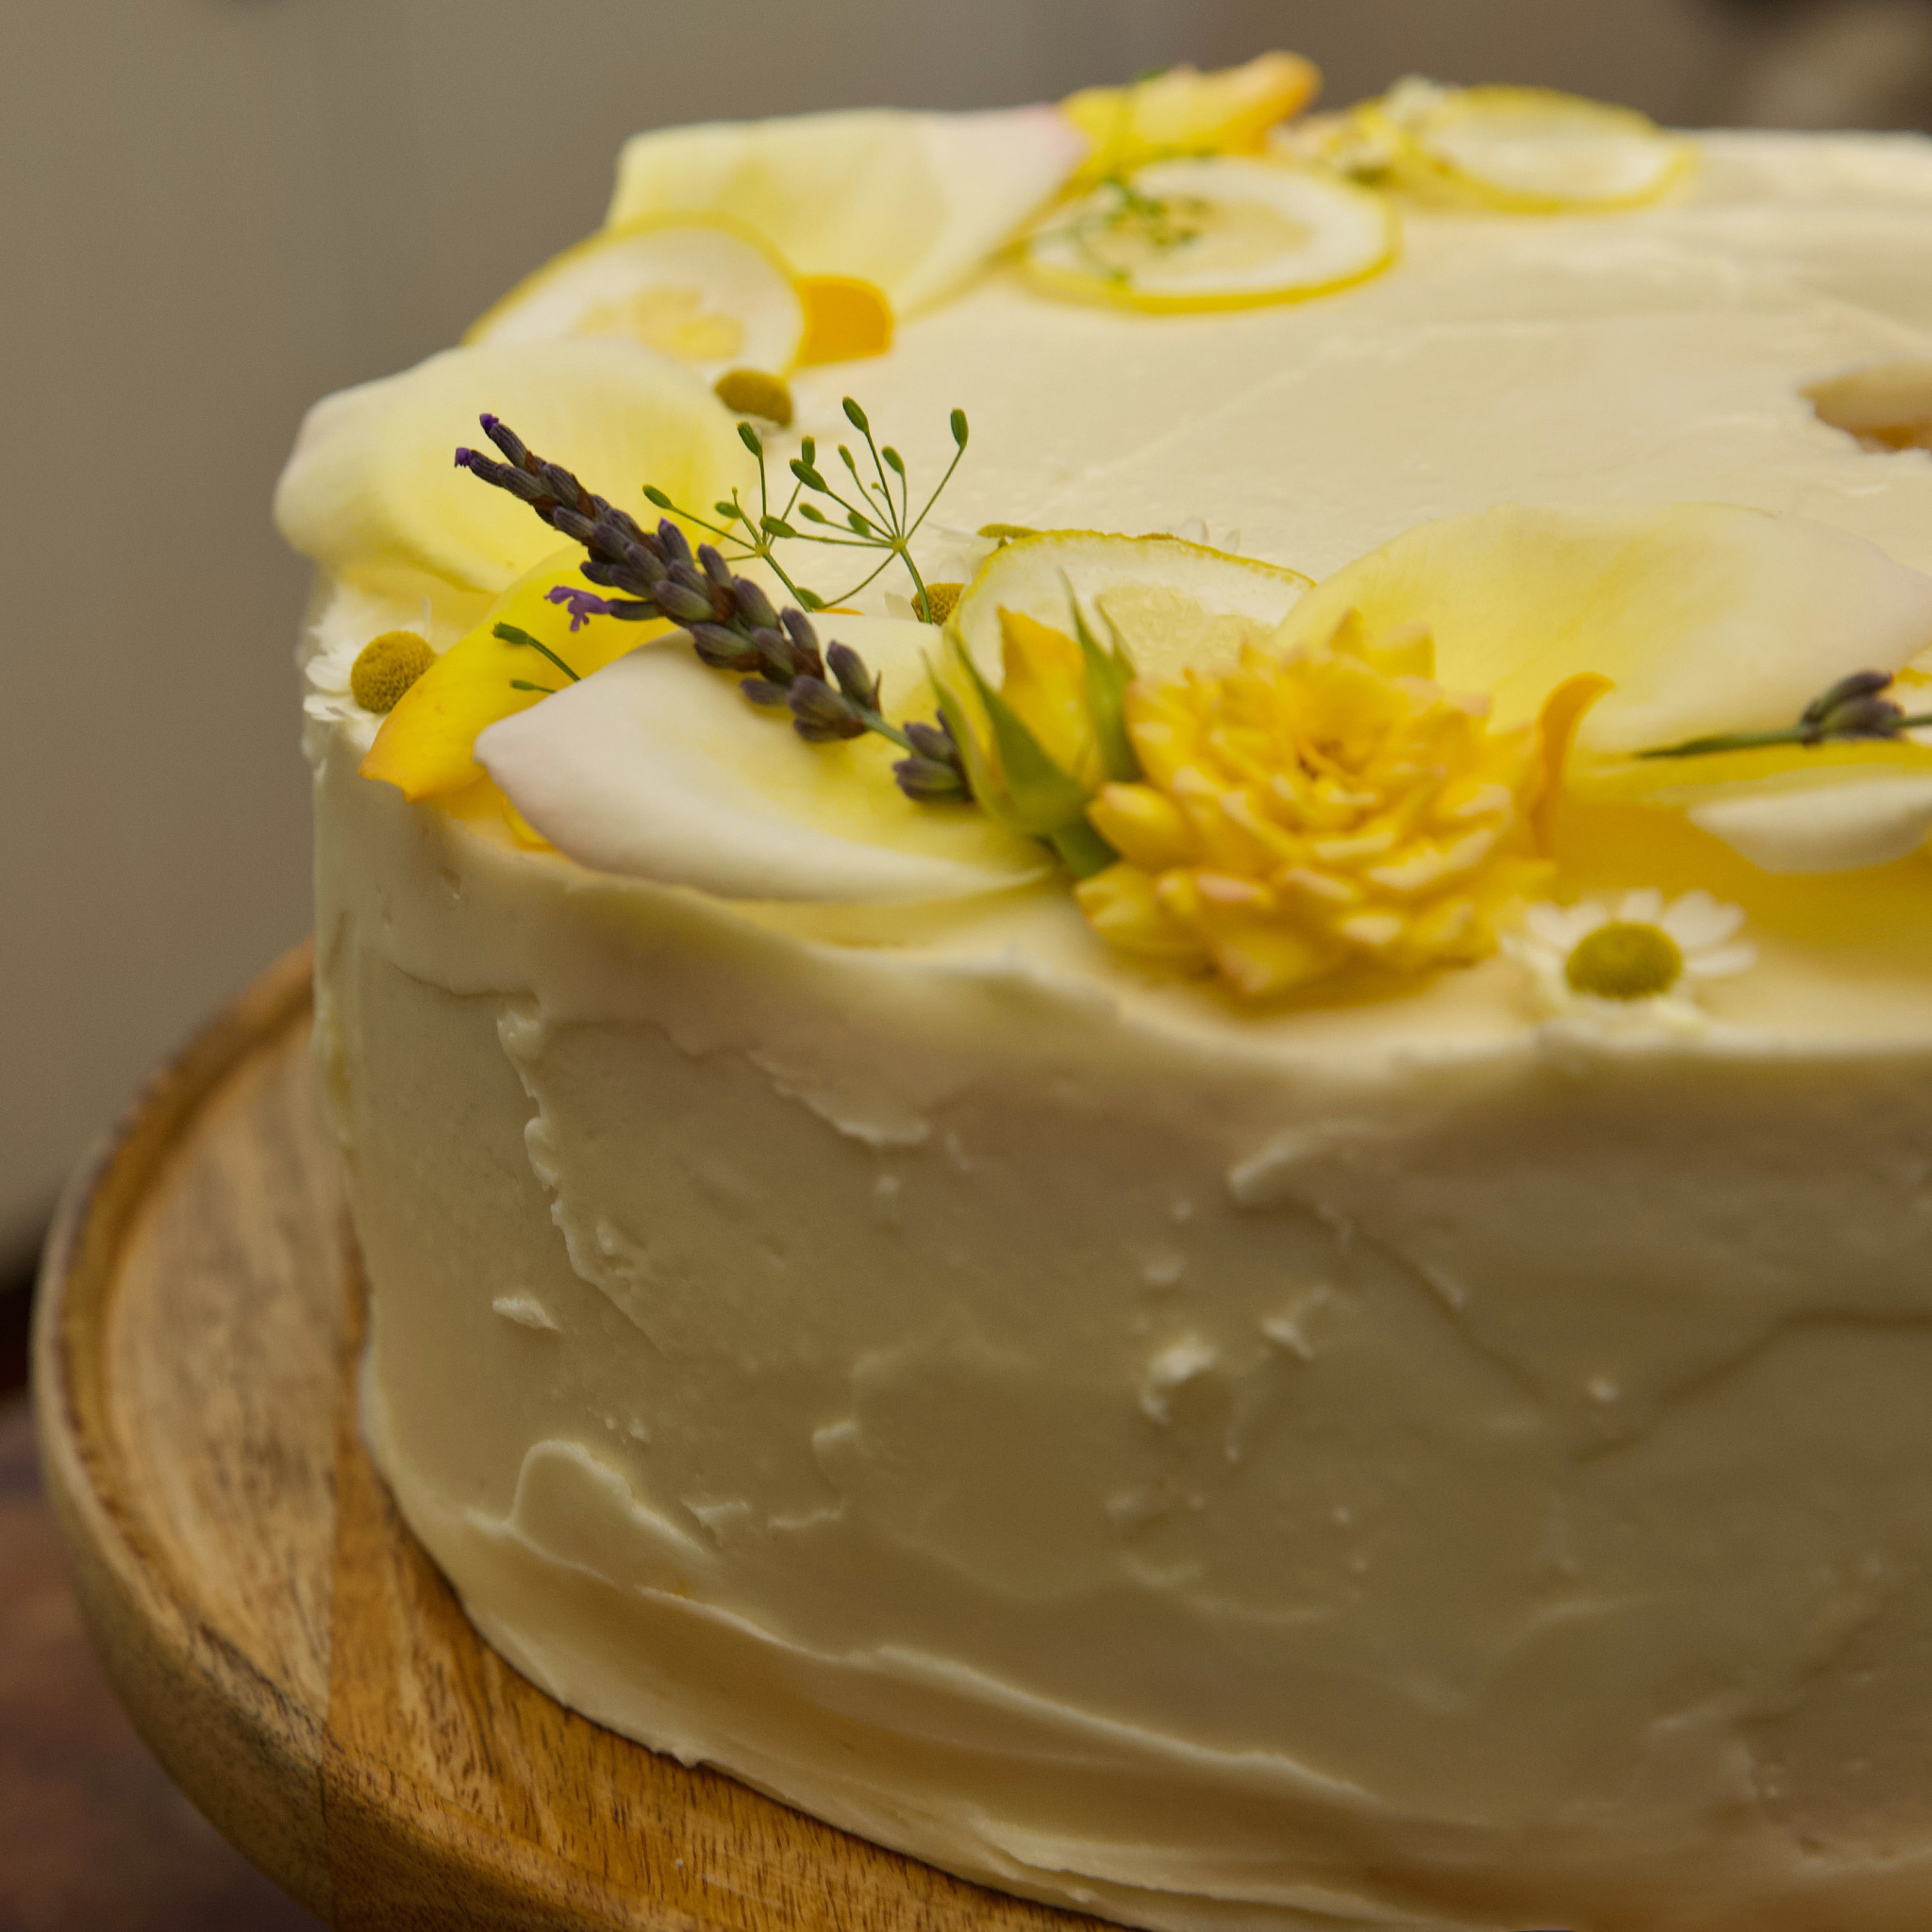 Elizabeth Poett's Lemon Cake with Lemon Curd Buttercream Frosting